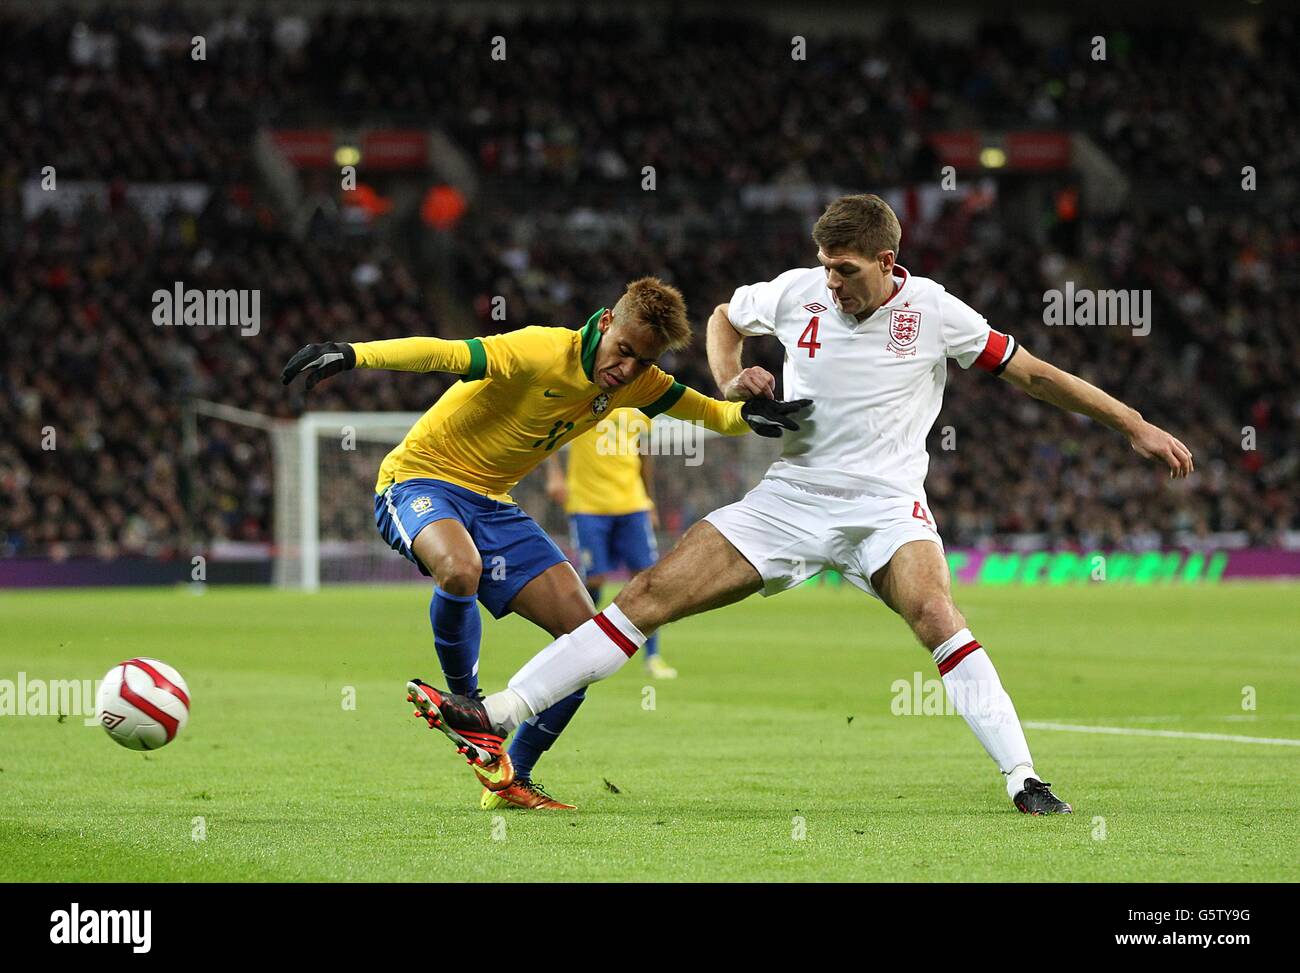 Soccer - International Friendly - England v Brazil - Wembley Stadium. England's Steven Gerrard (right) and Brazil's Junior Neymar (left) battle for the ball Stock Photo